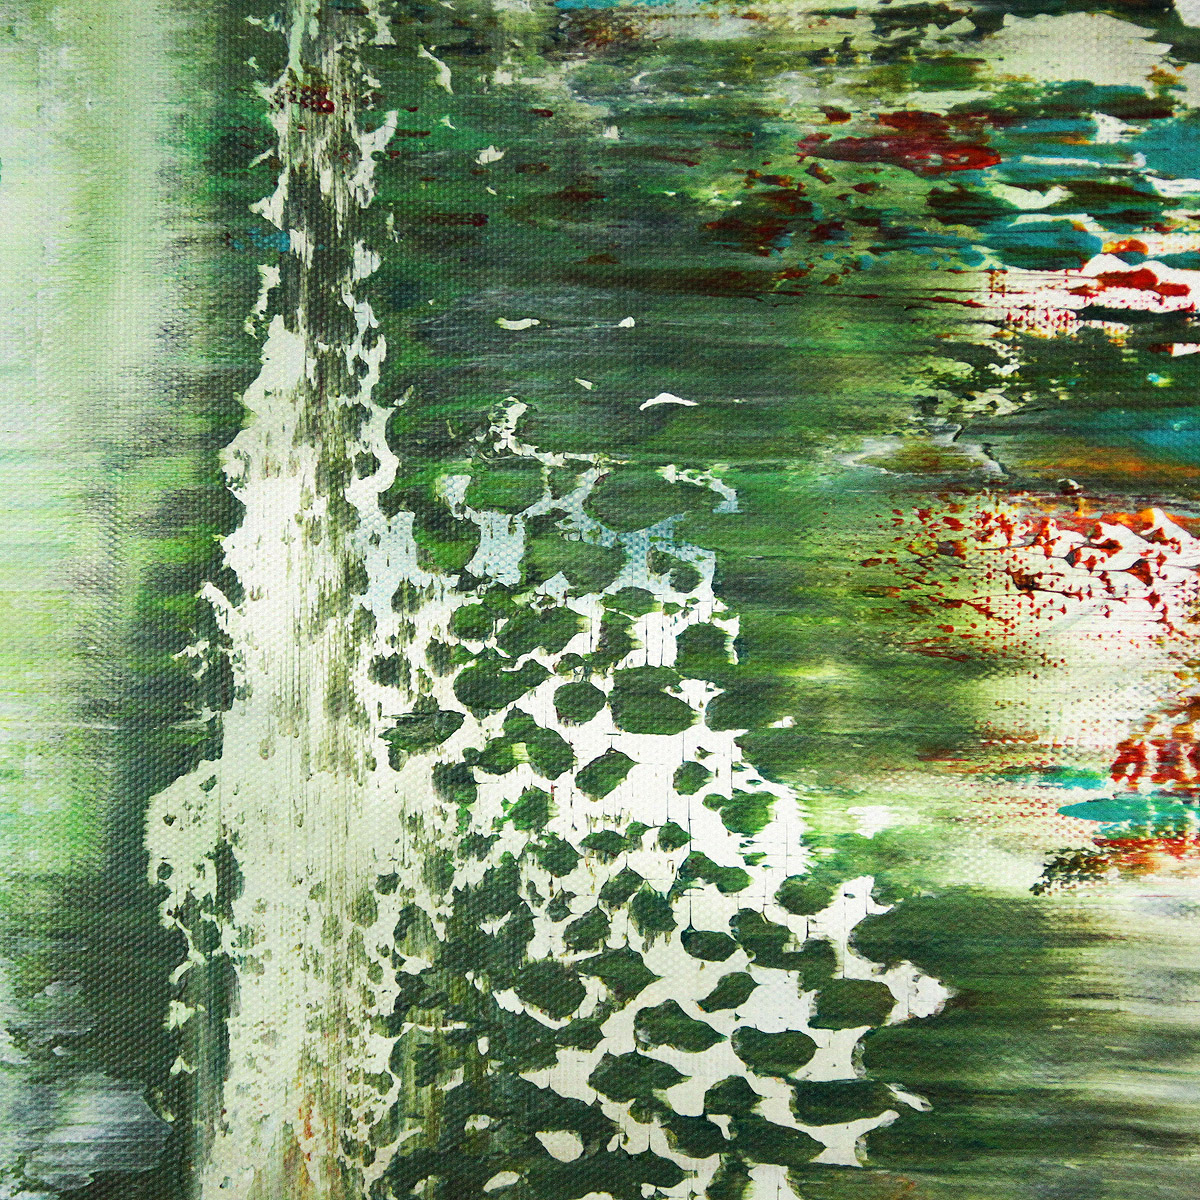 Acrylgemälde, G. Hung: "Langzeitbelichtung IV (Regen)"